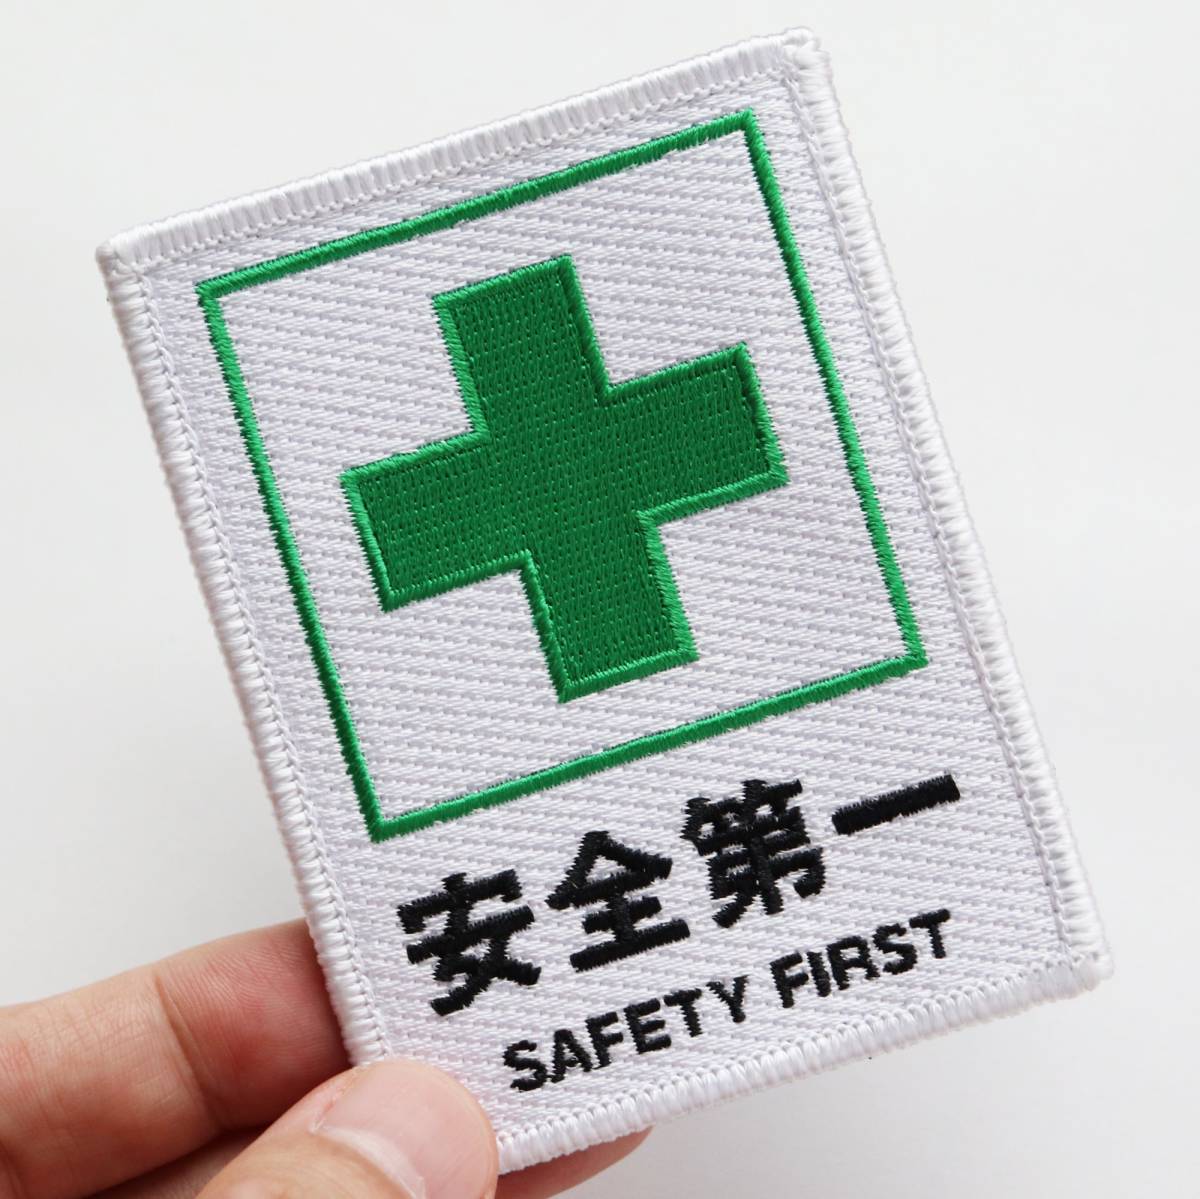  нашивка безопасность первый . зеленый 10 знак SAFETY FIRST текстильная застёжка ( липучка * текстильная застёжка ) съемный милитари страйкбол вышивка patch прямоугольный 